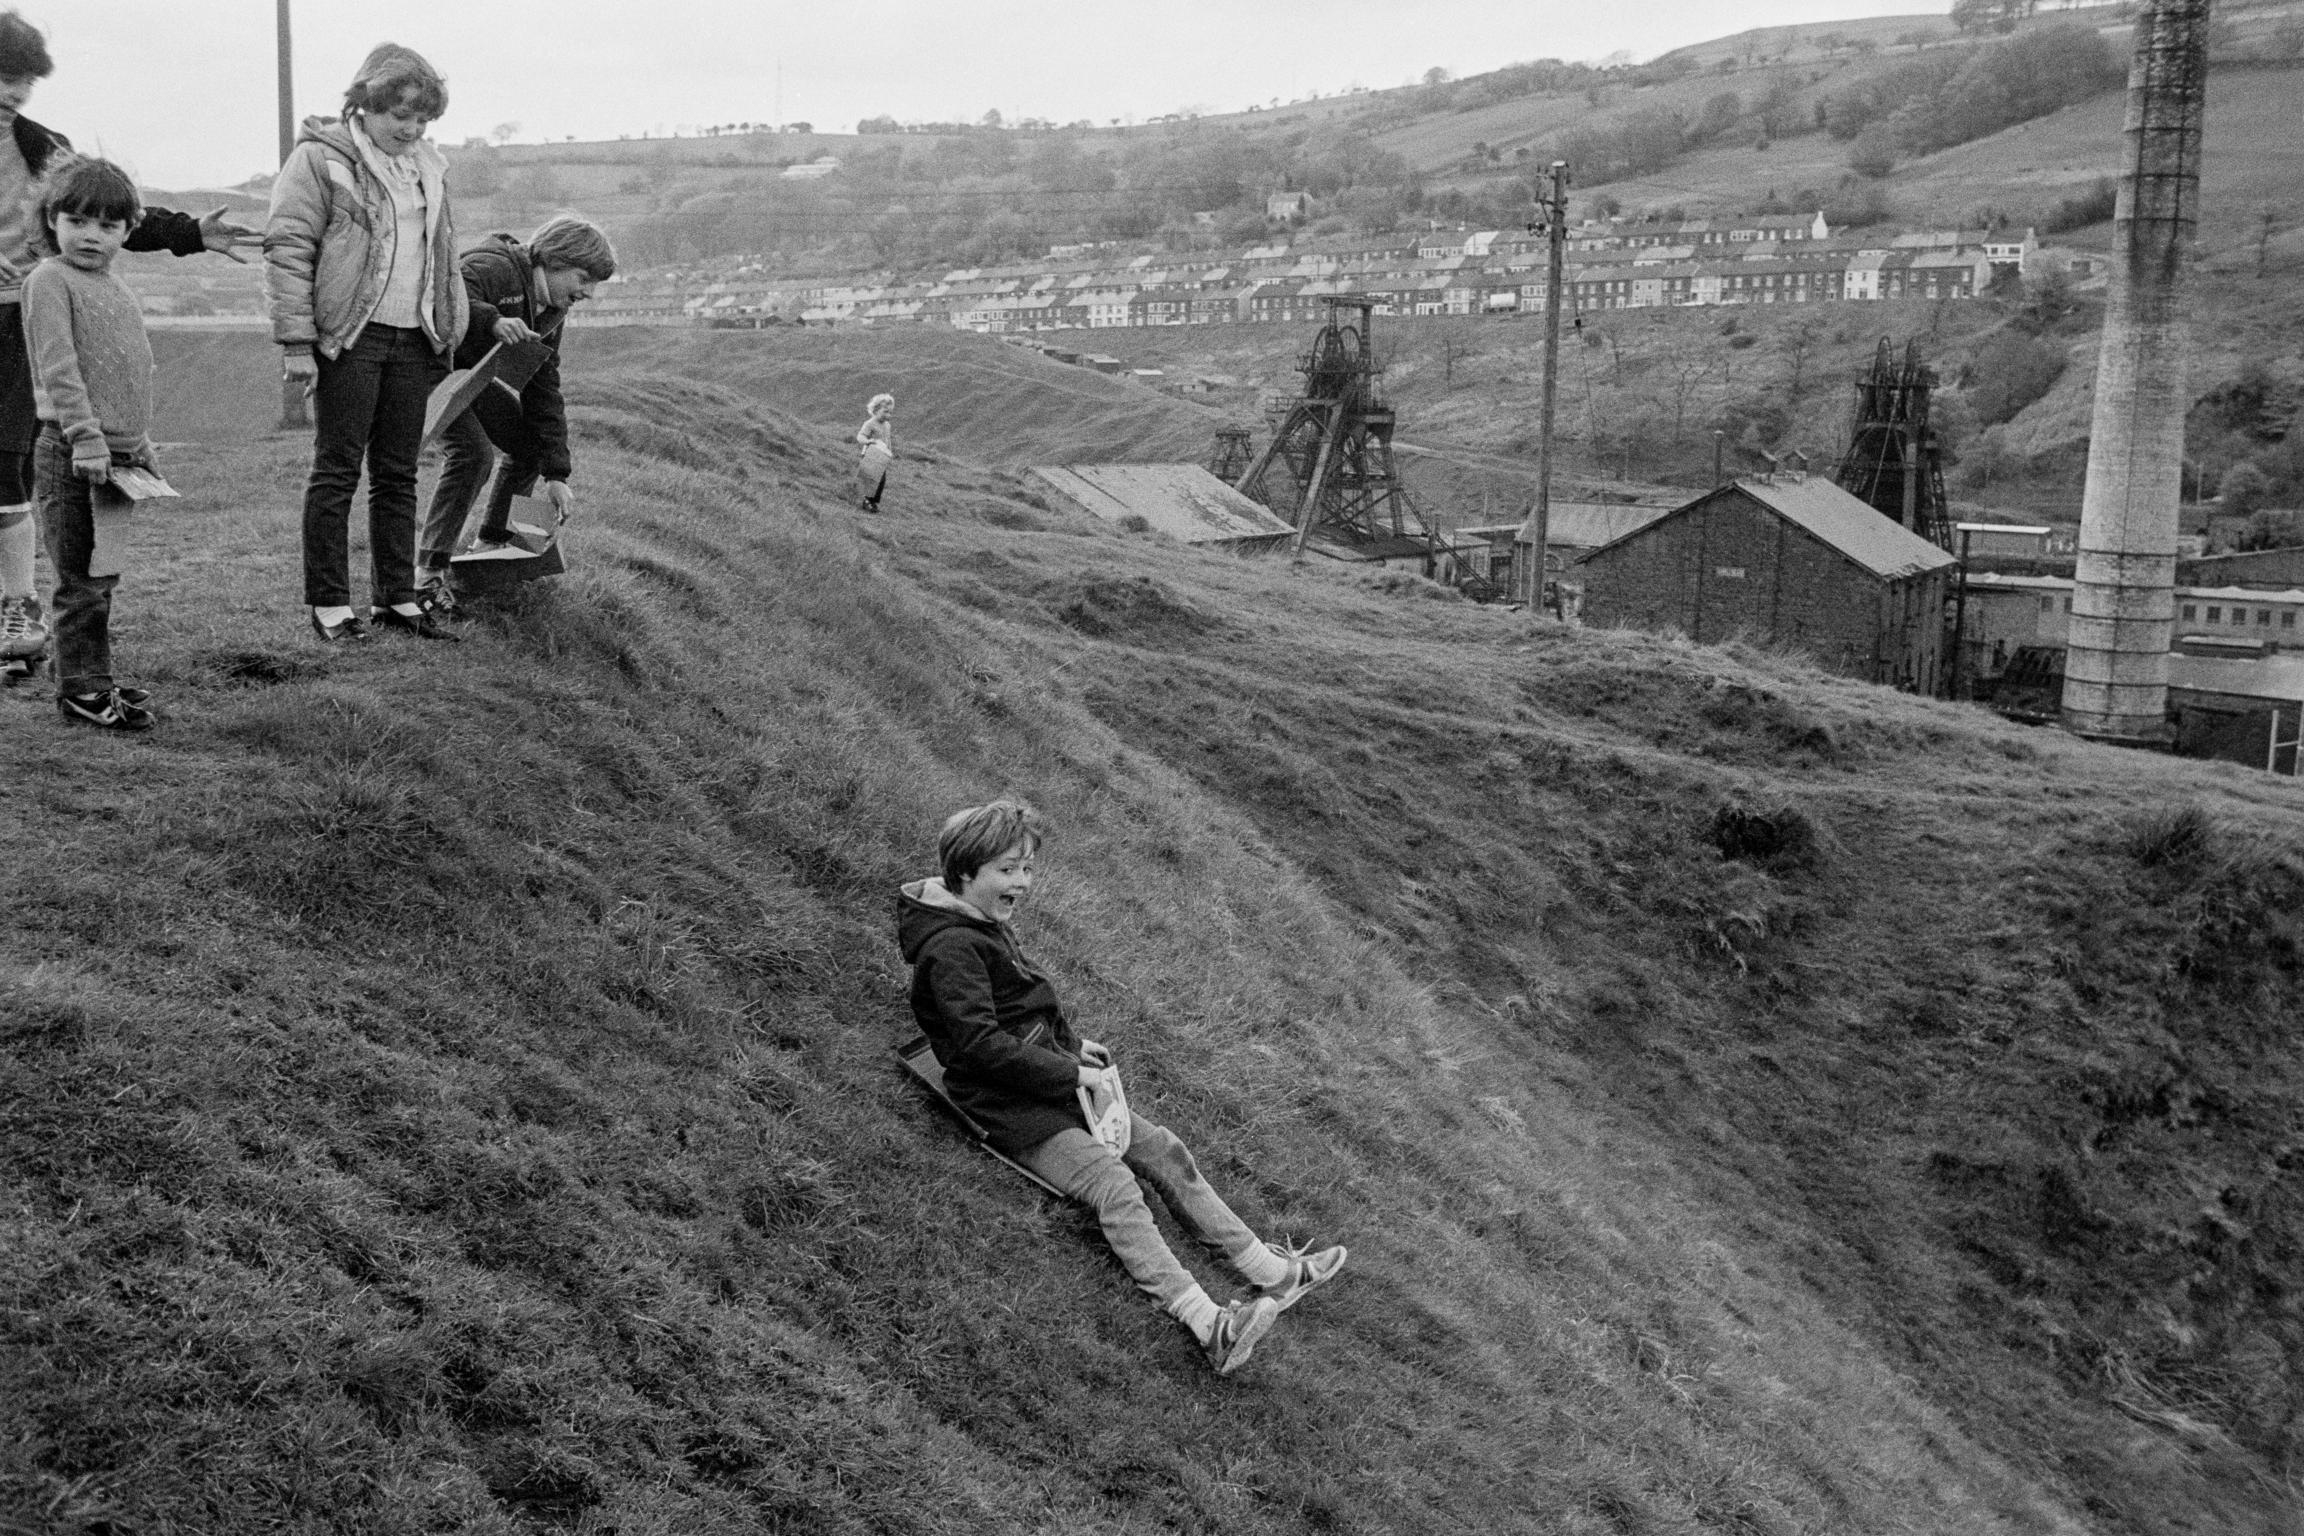 Coal tip sledge fun. Porth, Wales